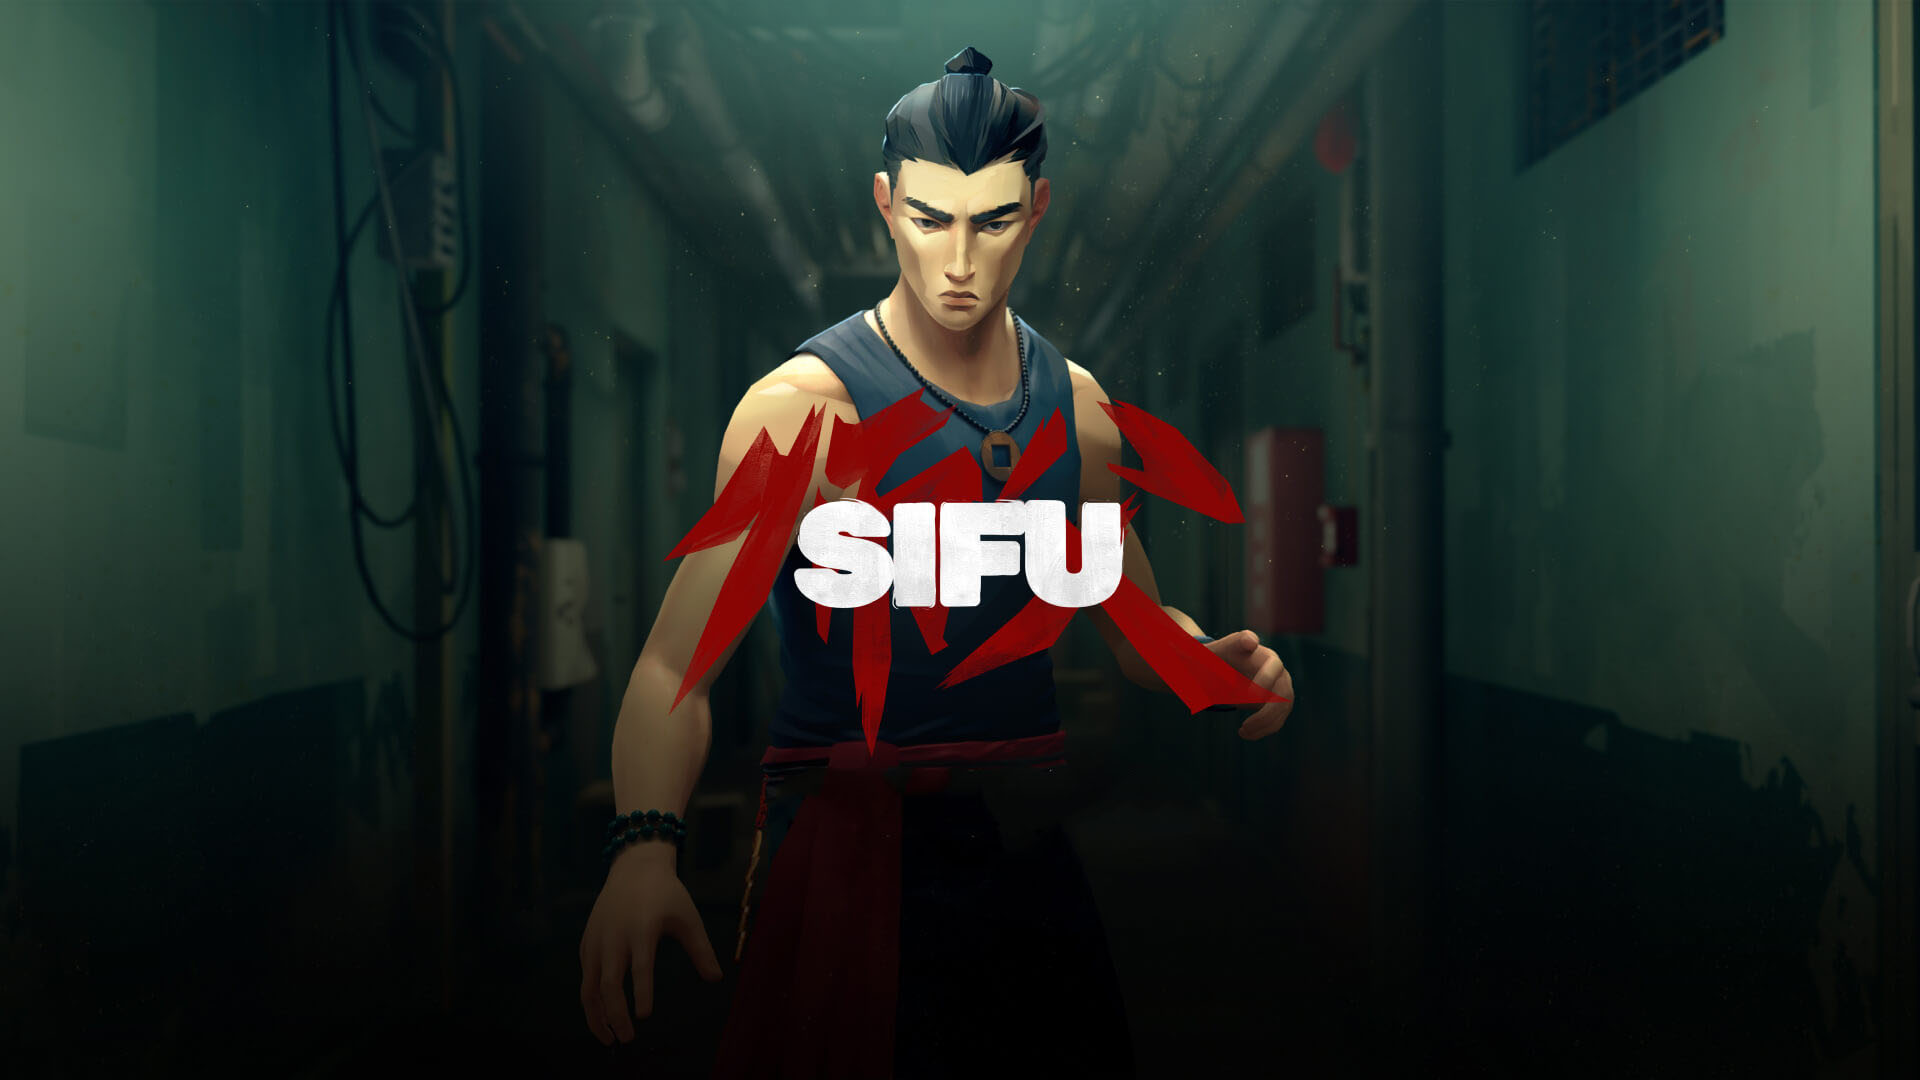 Sifu Launches February 22